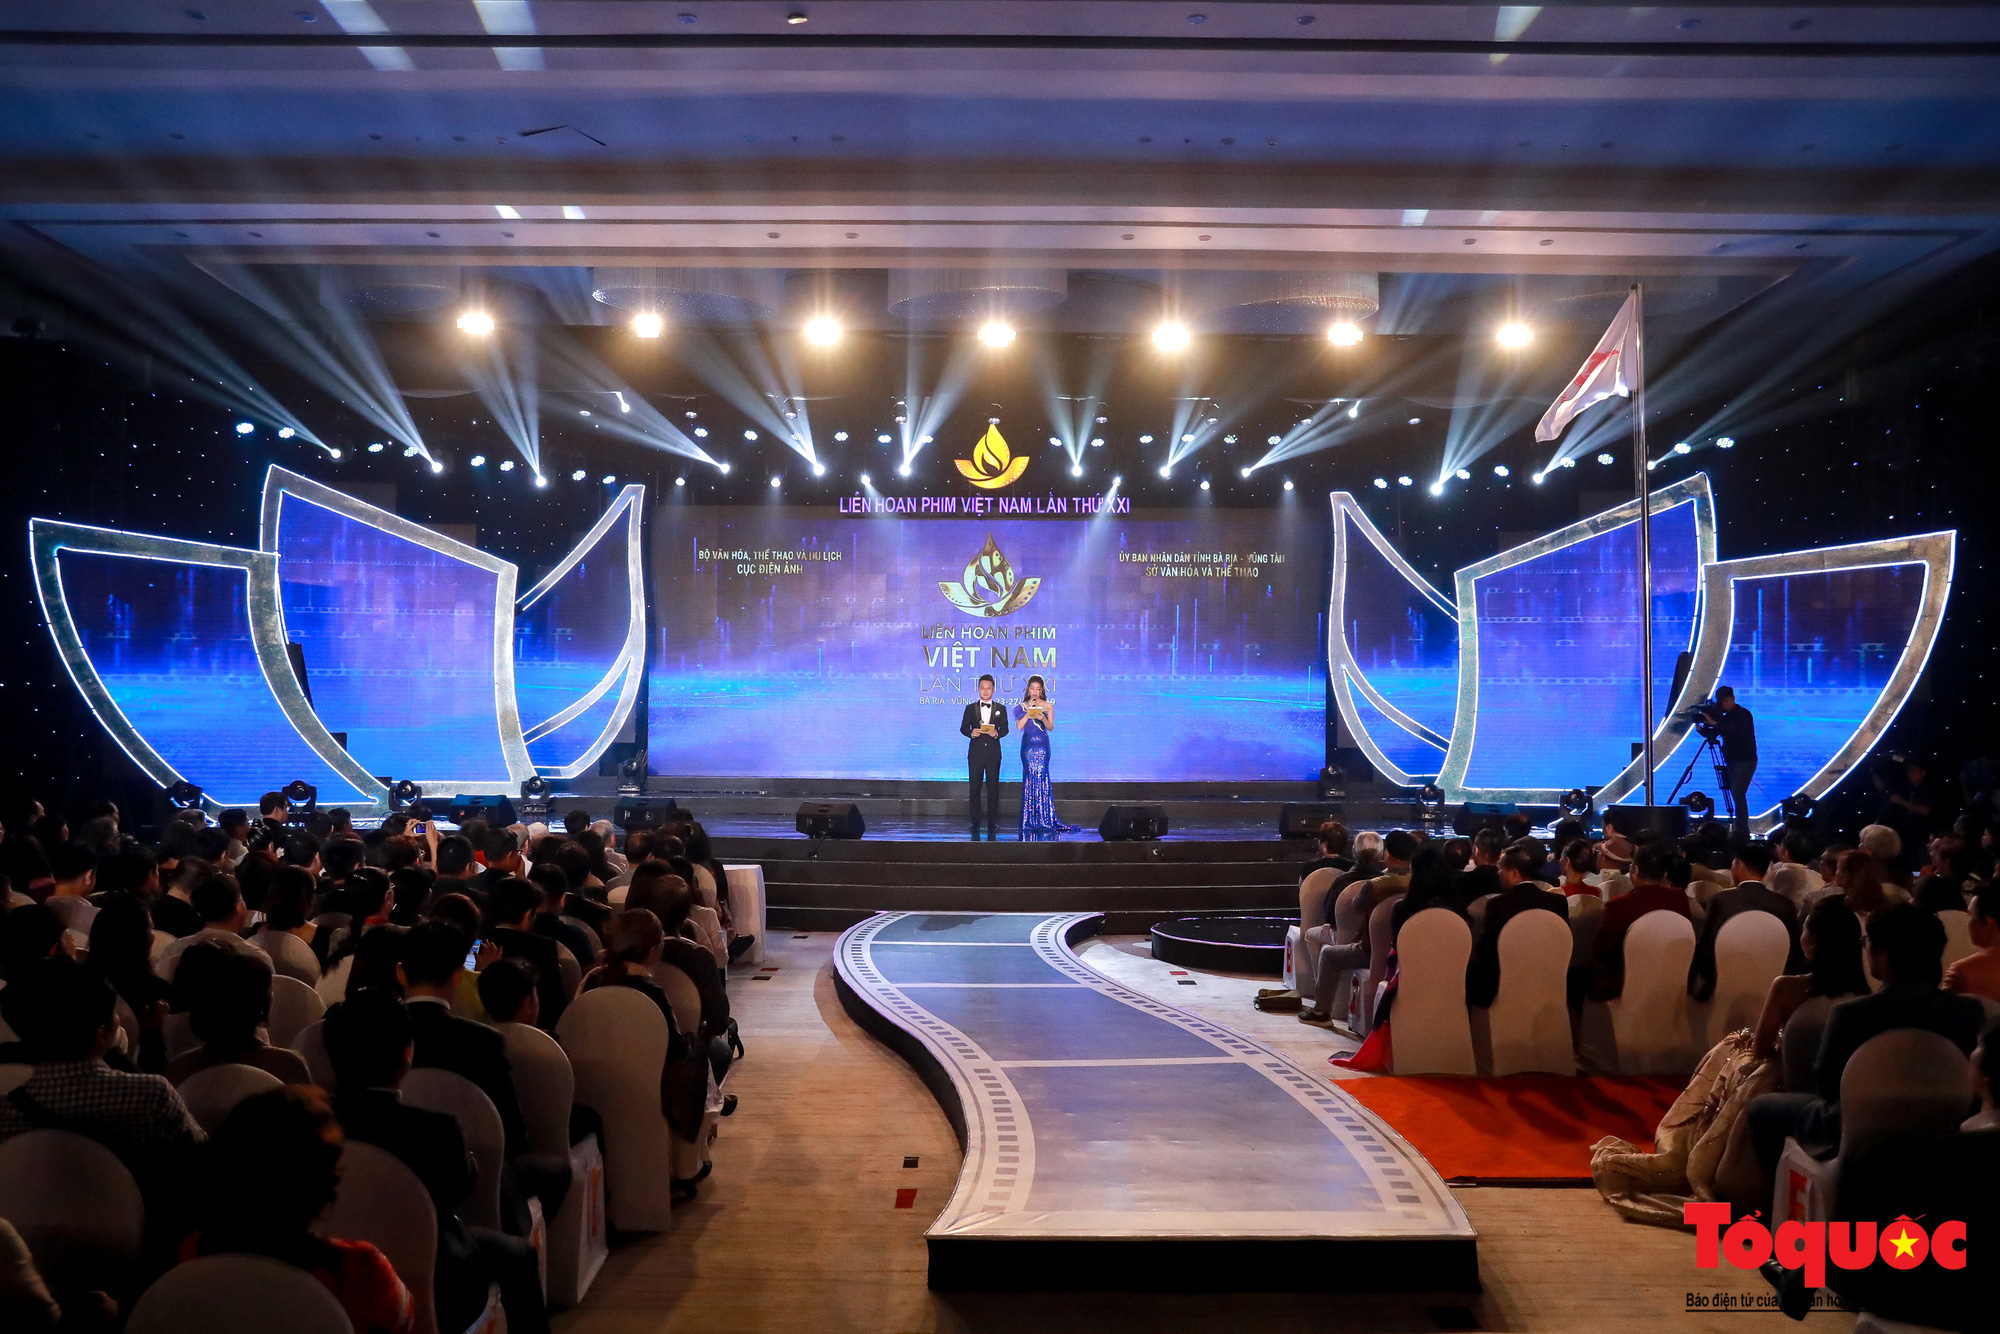 Đưa Liên hoan phim Việt Nam trở thành thương hiệu quốc gia